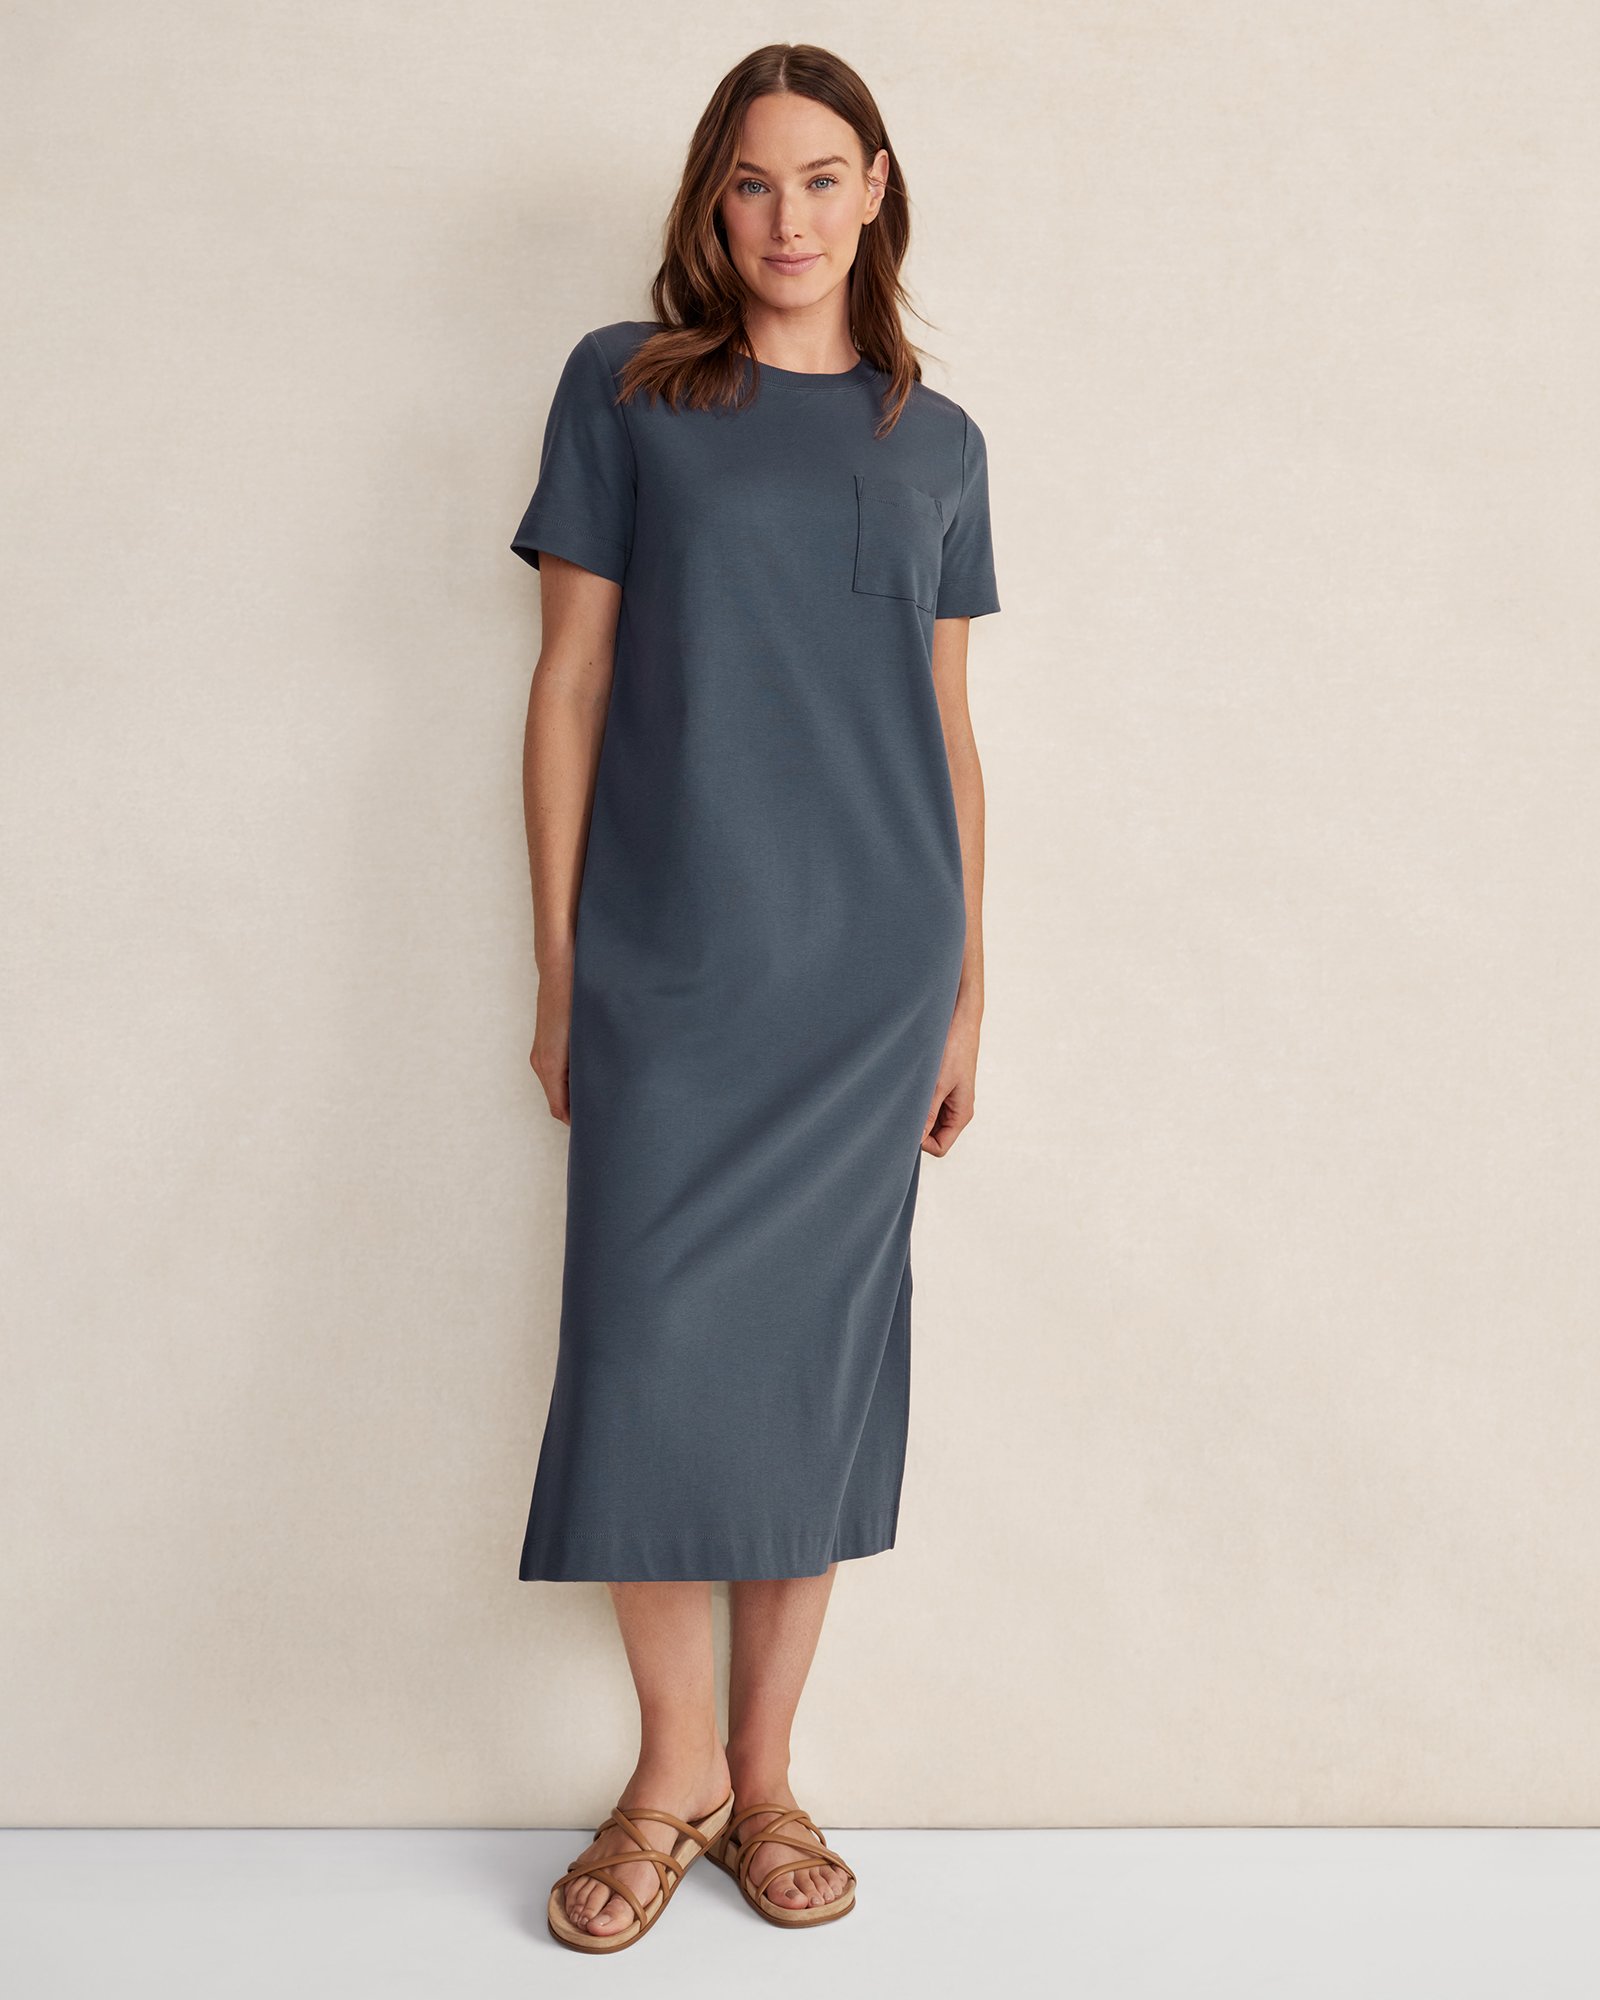 Talbots Organic Cotton Interlock T-shirt Dress - Midnight - Xl